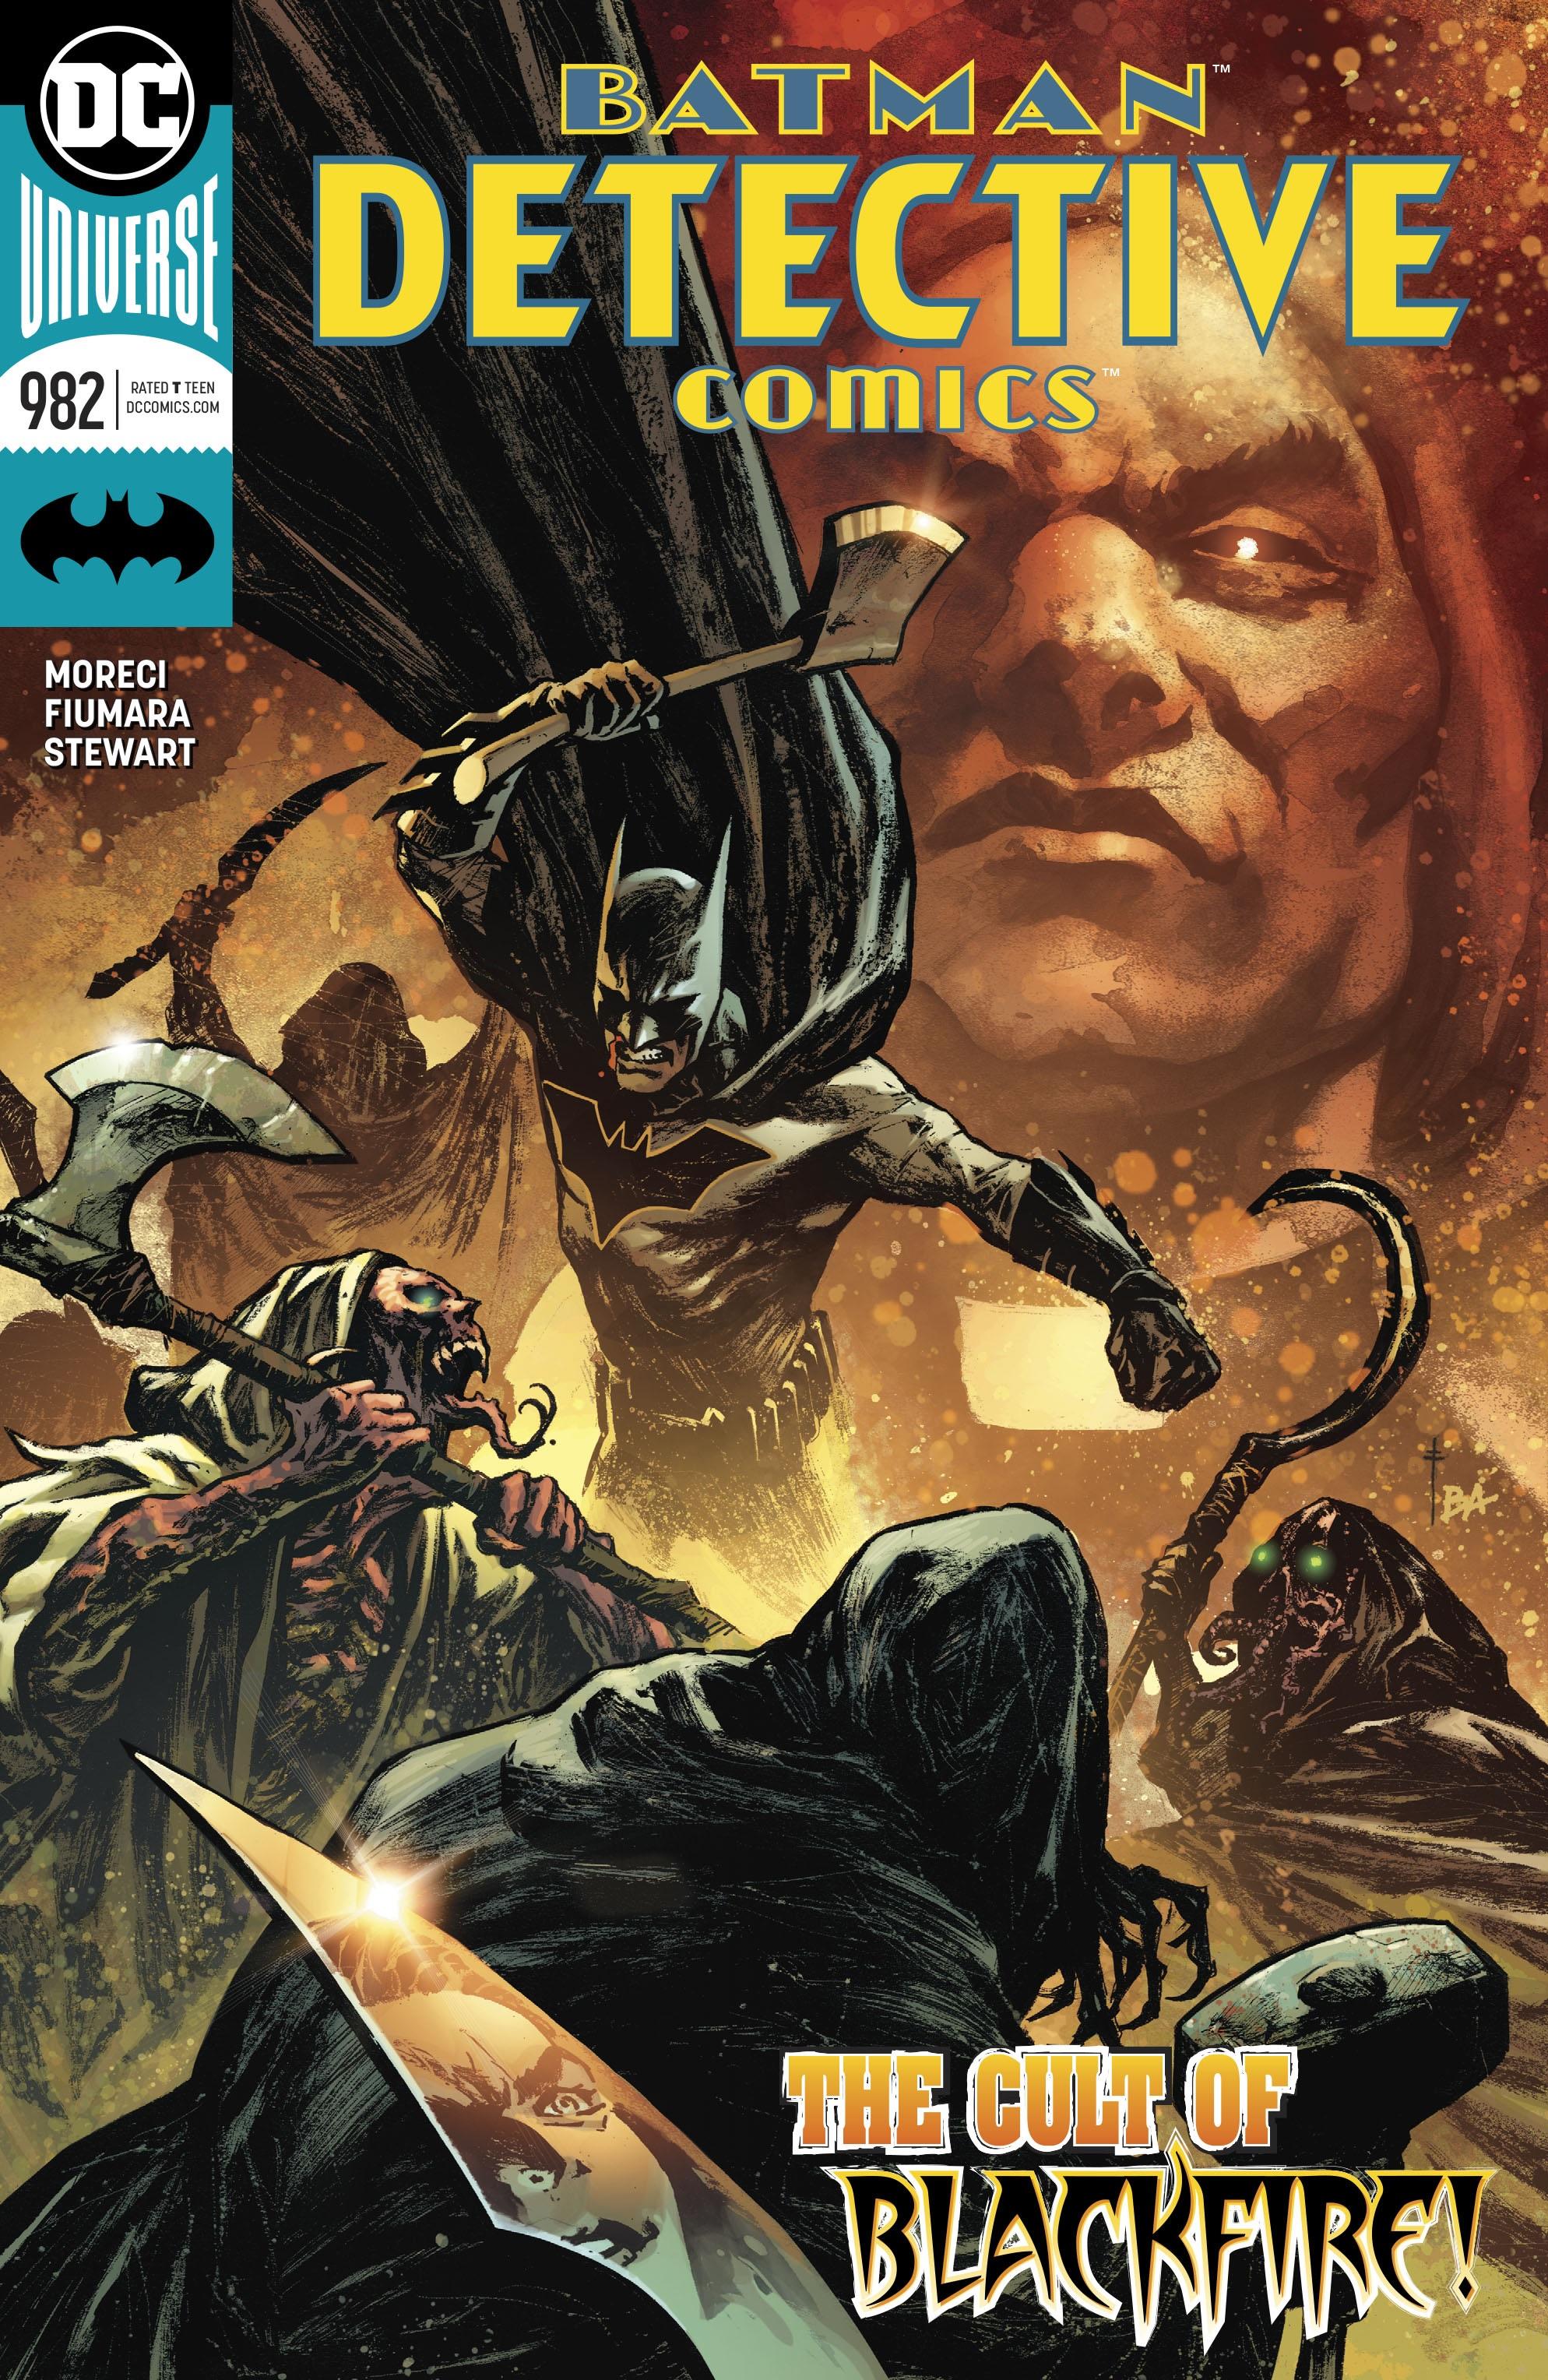 Detective Comics Vol. 1 #982